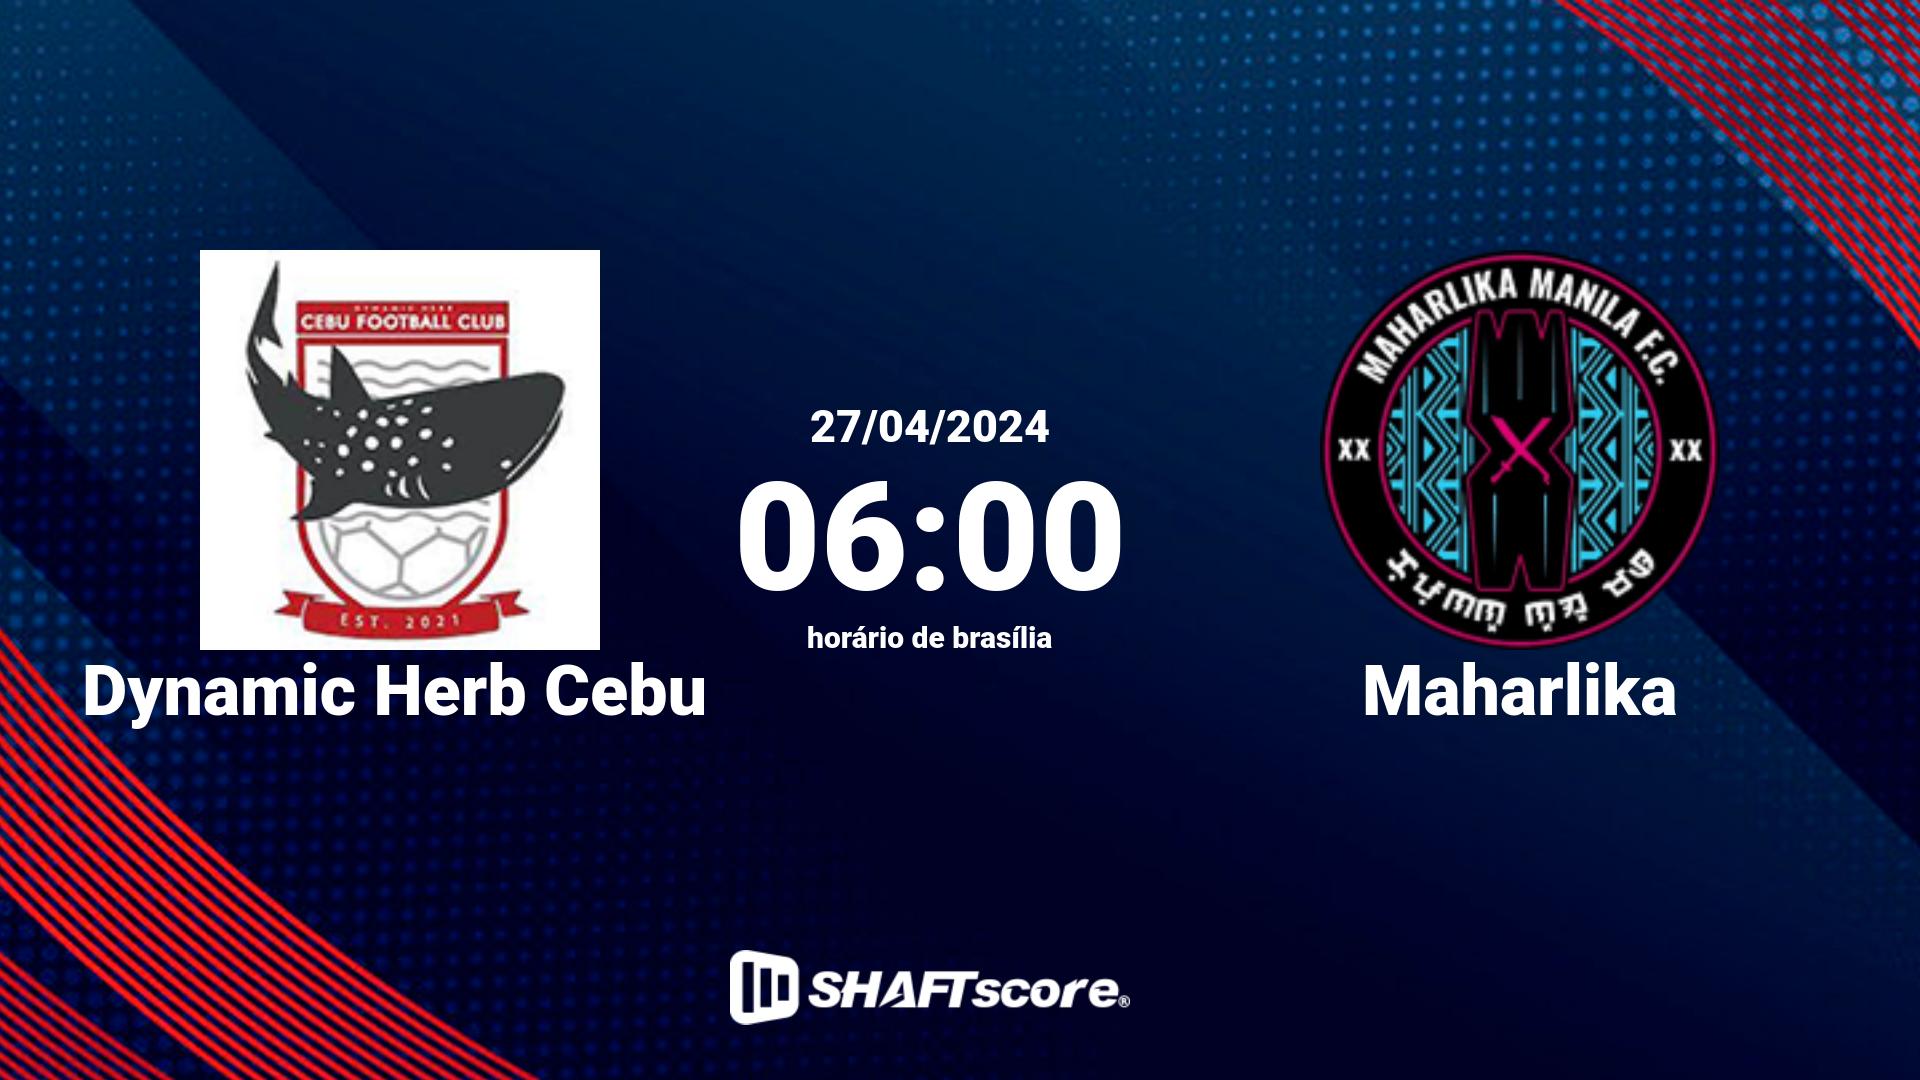 Estatísticas do jogo Dynamic Herb Cebu vs Maharlika 27.04 06:00